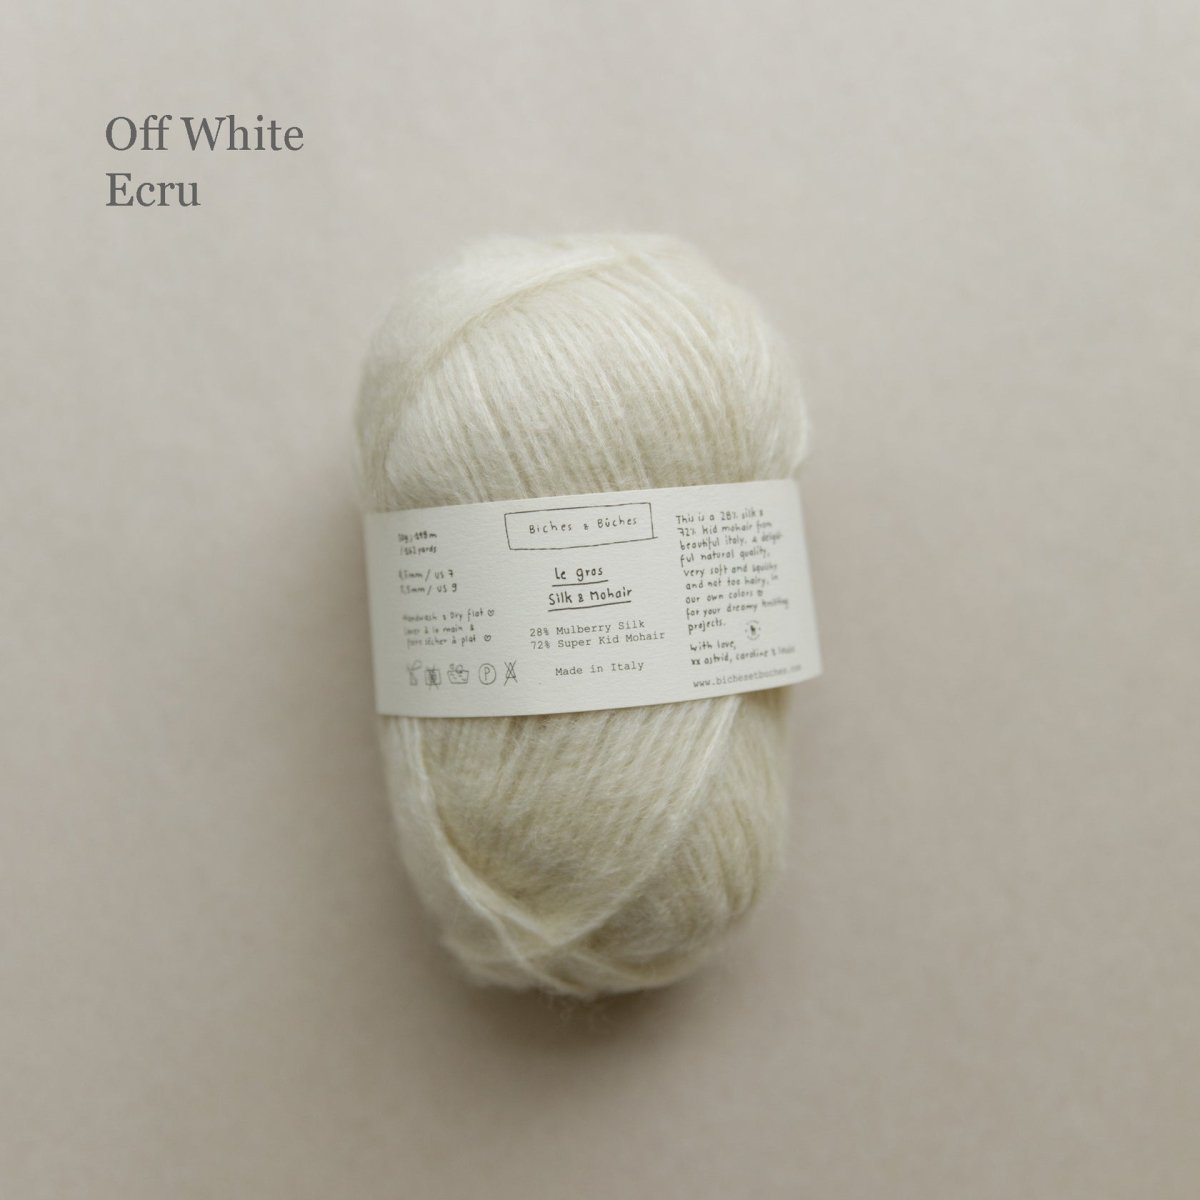 le gros silk & mohair - off white at Wabi Sabi